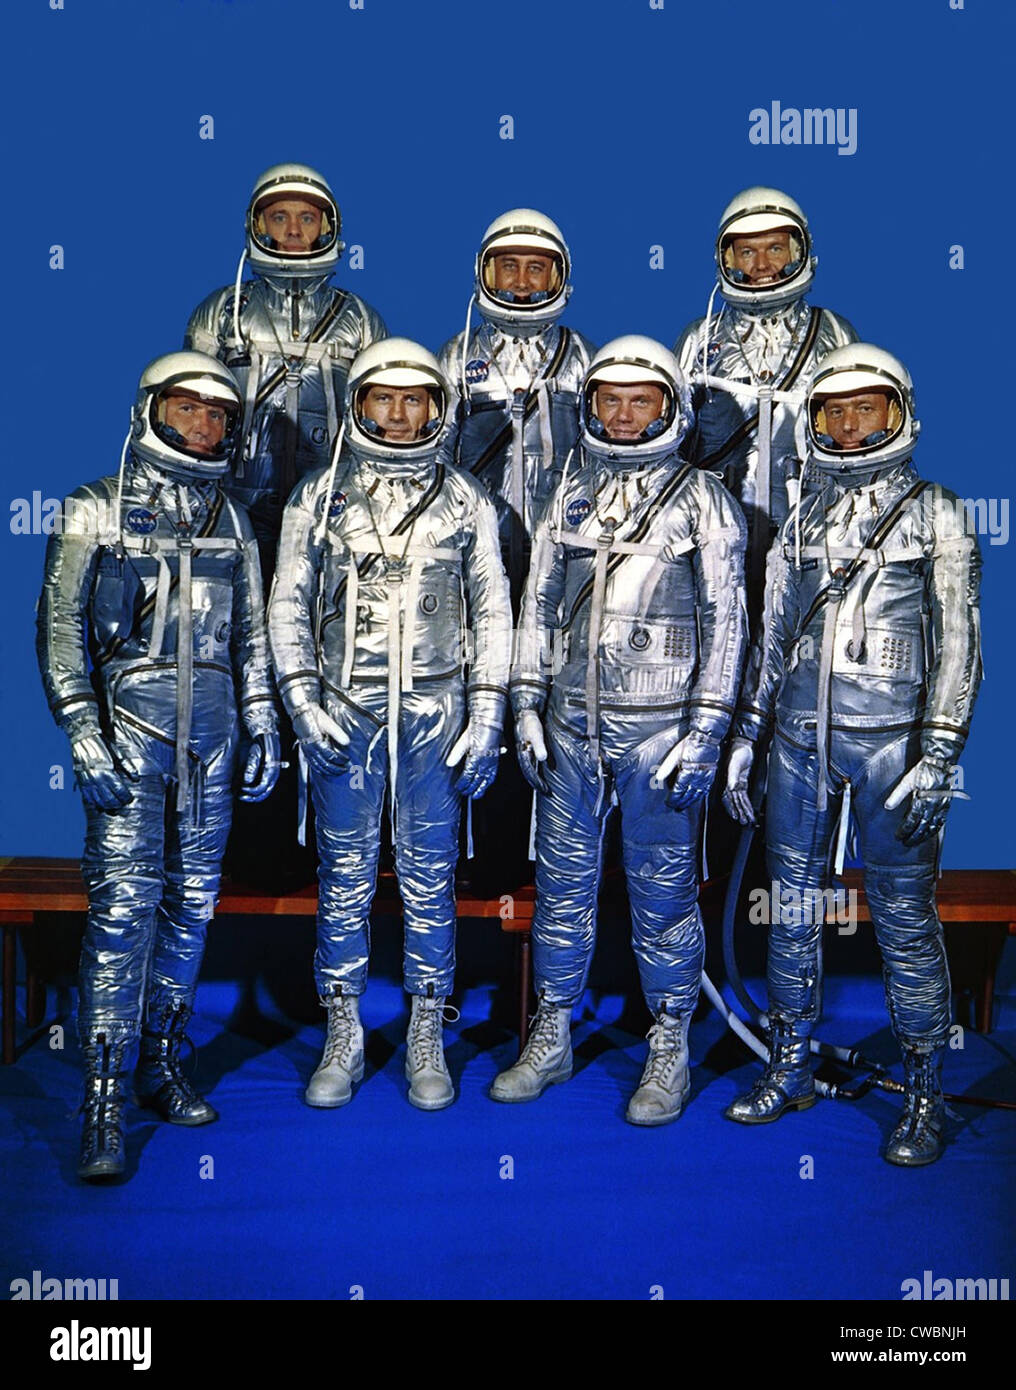 Les astronautes dans leur projet Mercure combinaisons spatiales. Première rangée, de gauche à droite, H. Walter Schirra Jr., Donald Slayton, John H. K. Banque D'Images